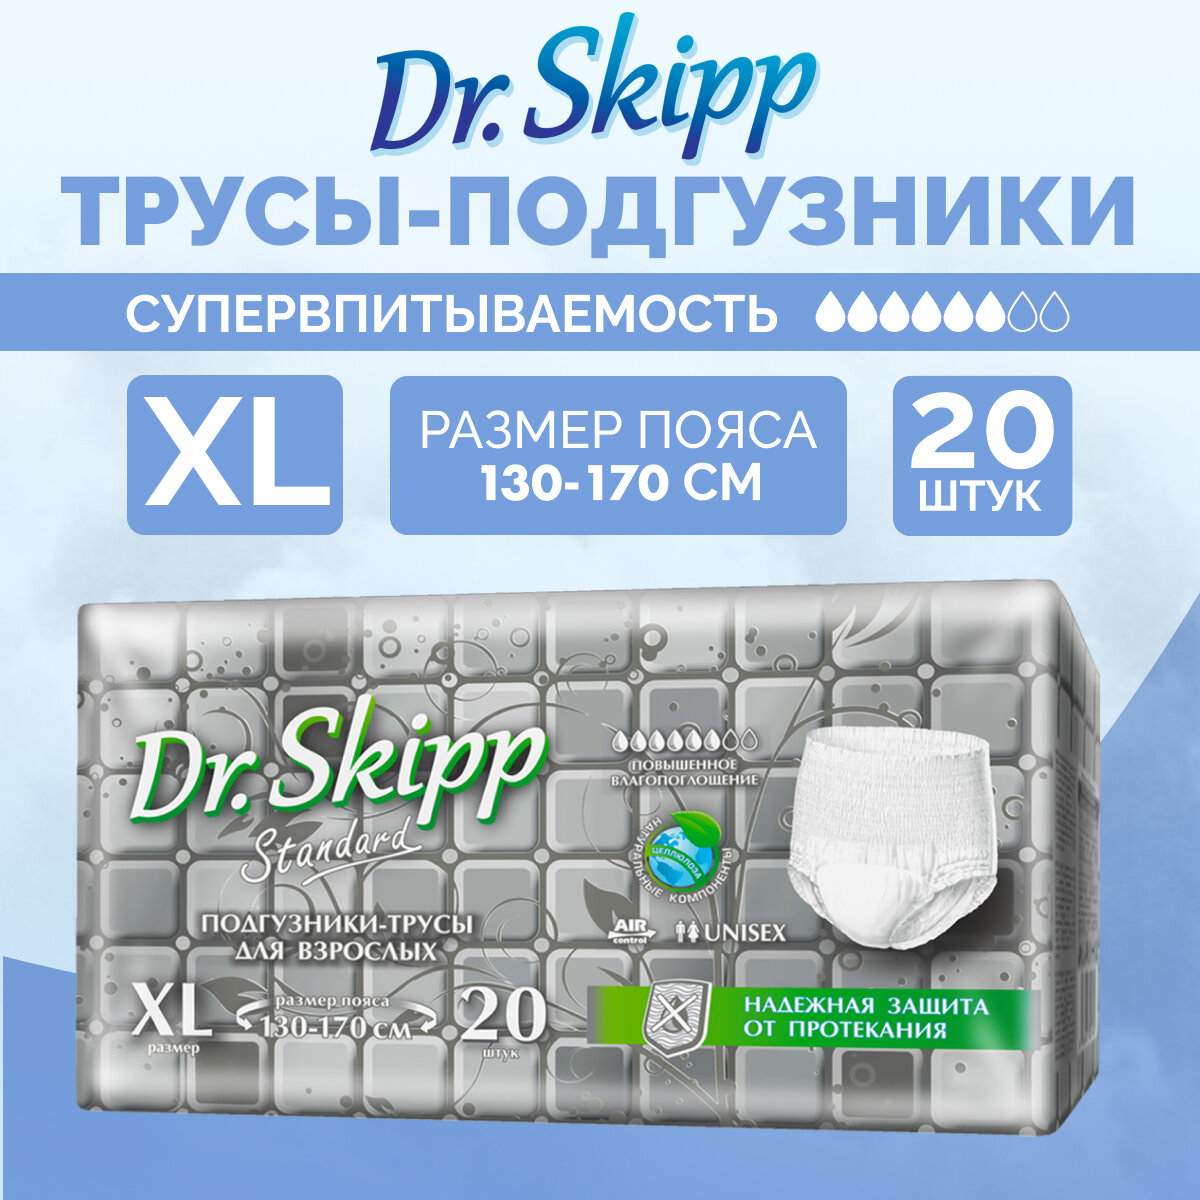 Трусы впитывающие Dr. Skipp Standard, XL, 130-170 см, 20 шт.